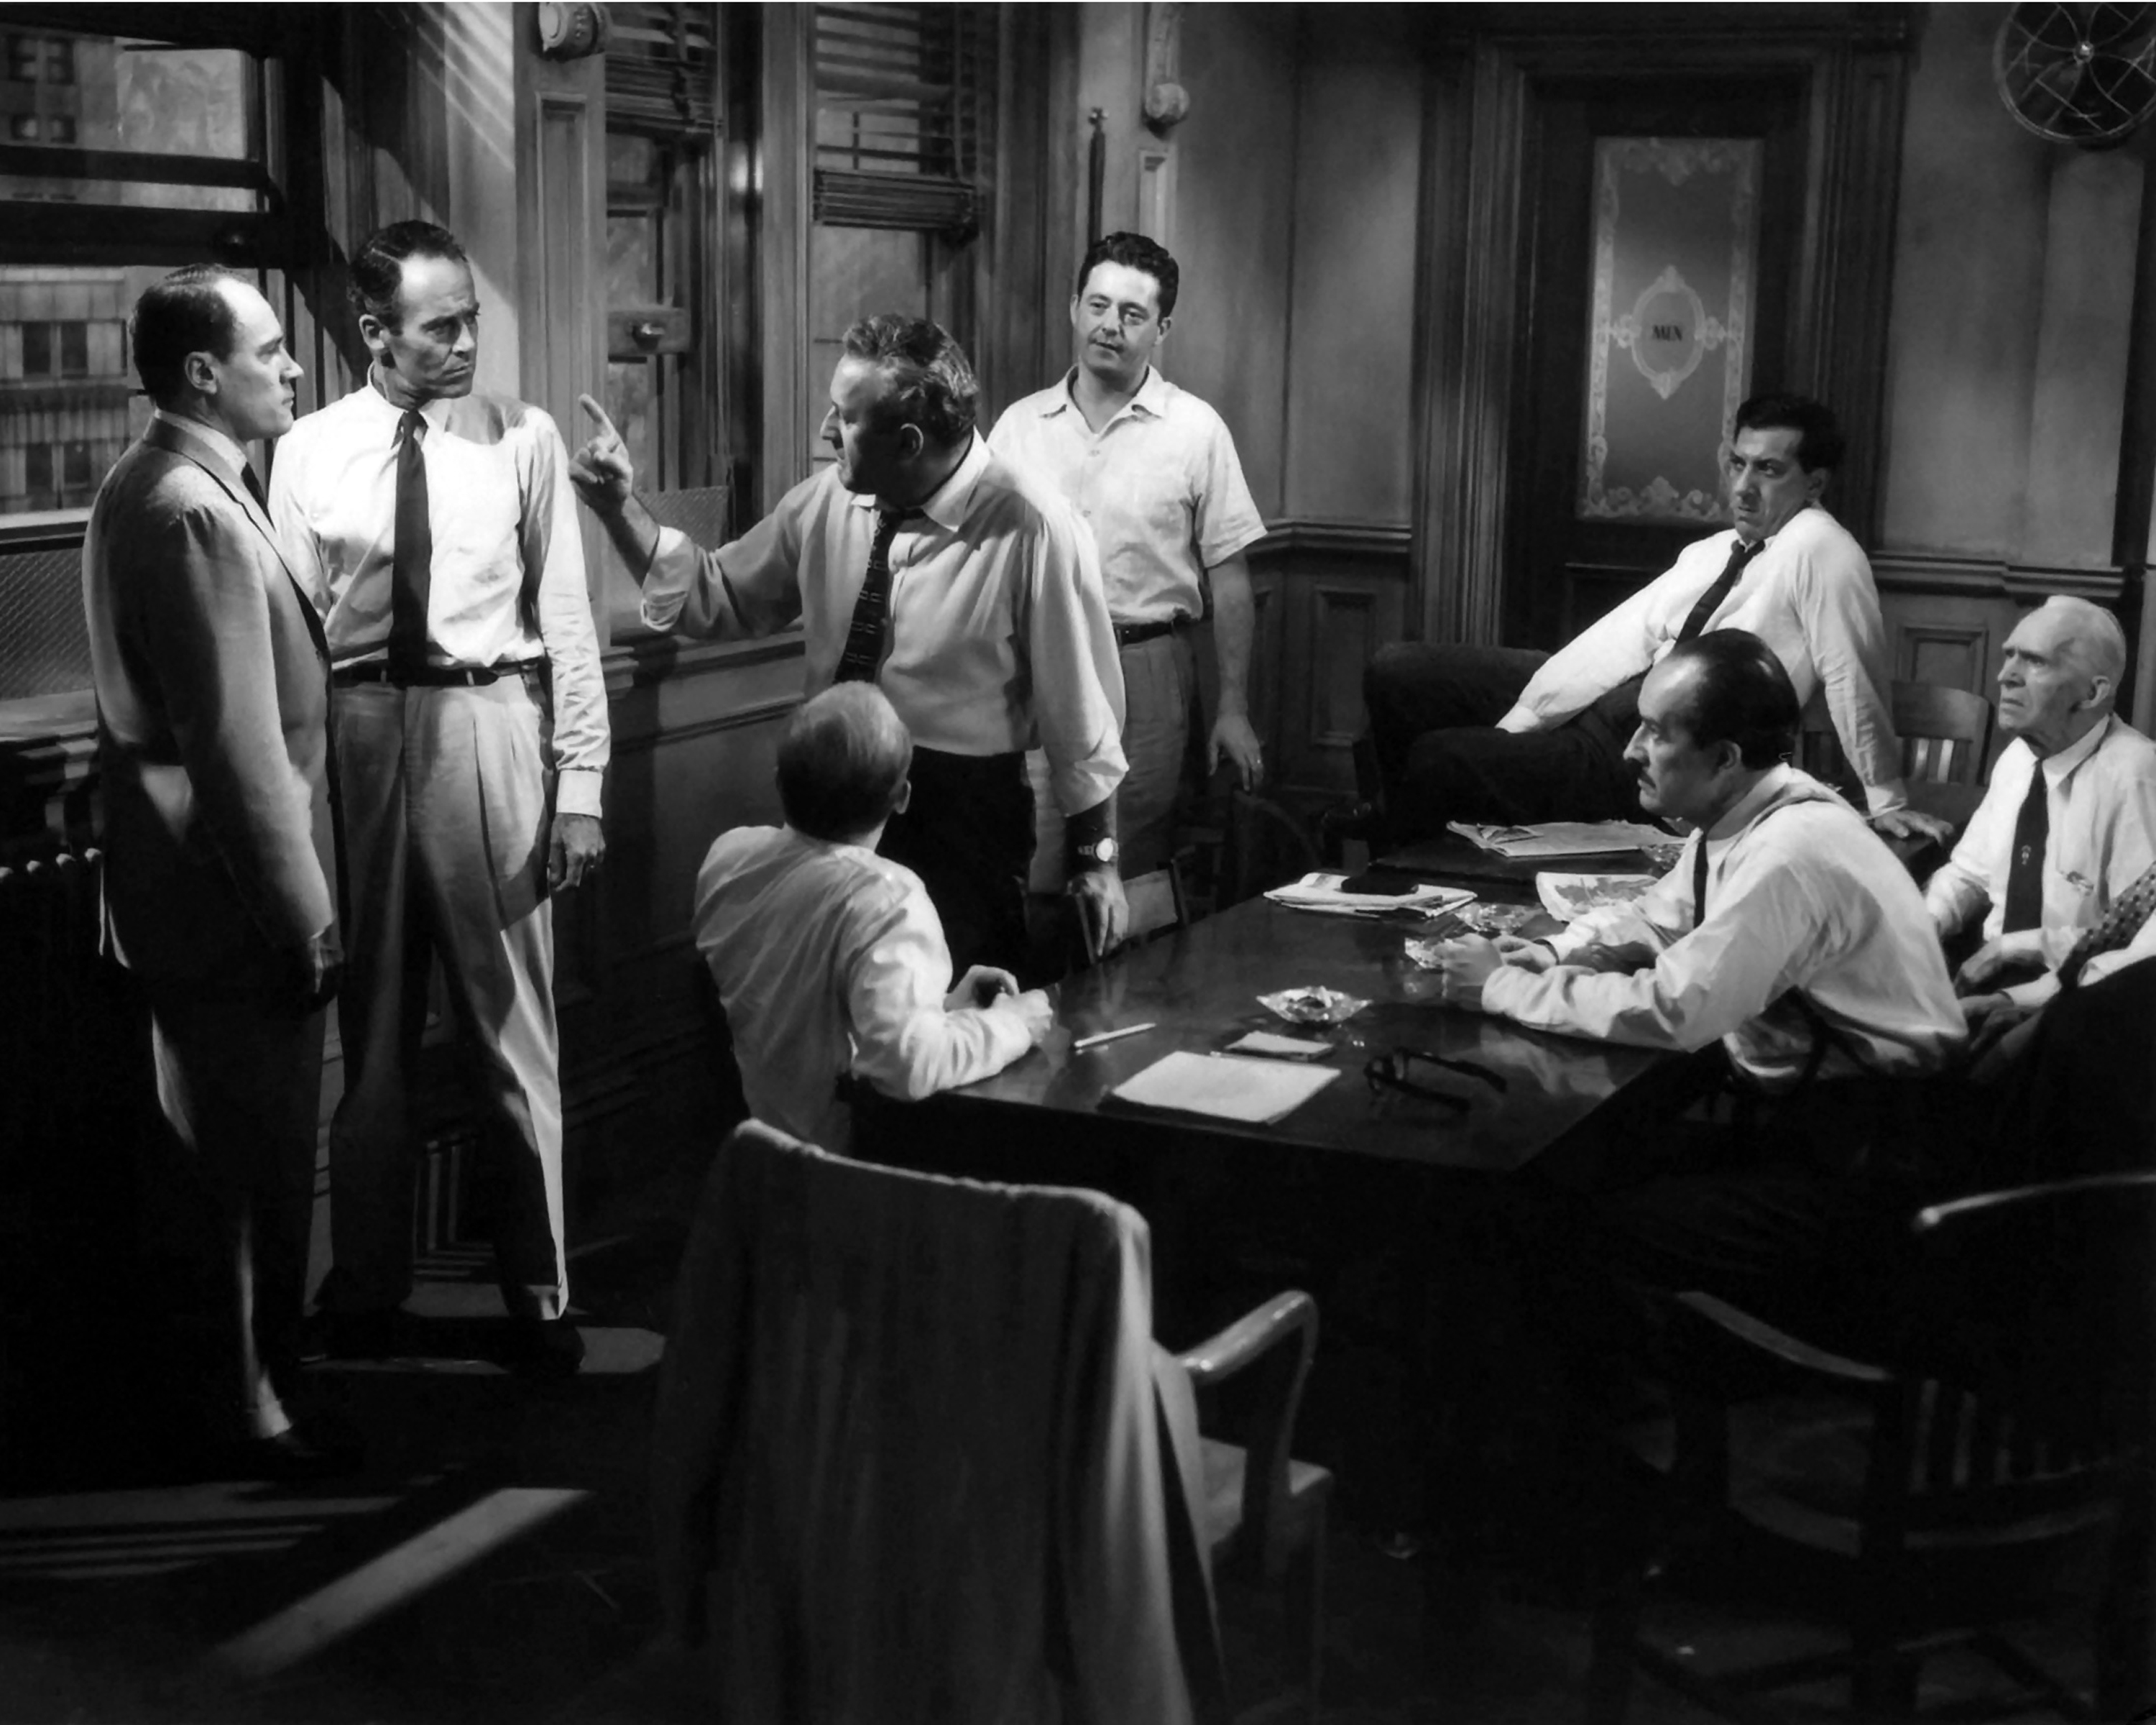 Henry Fonda, Jack Klugman, Lee J. Cobb, Edward Binns, John Fiedler, E.G. Marshall, Joseph Sweeney, and George Voskovec in 12 Angry Men (1957)